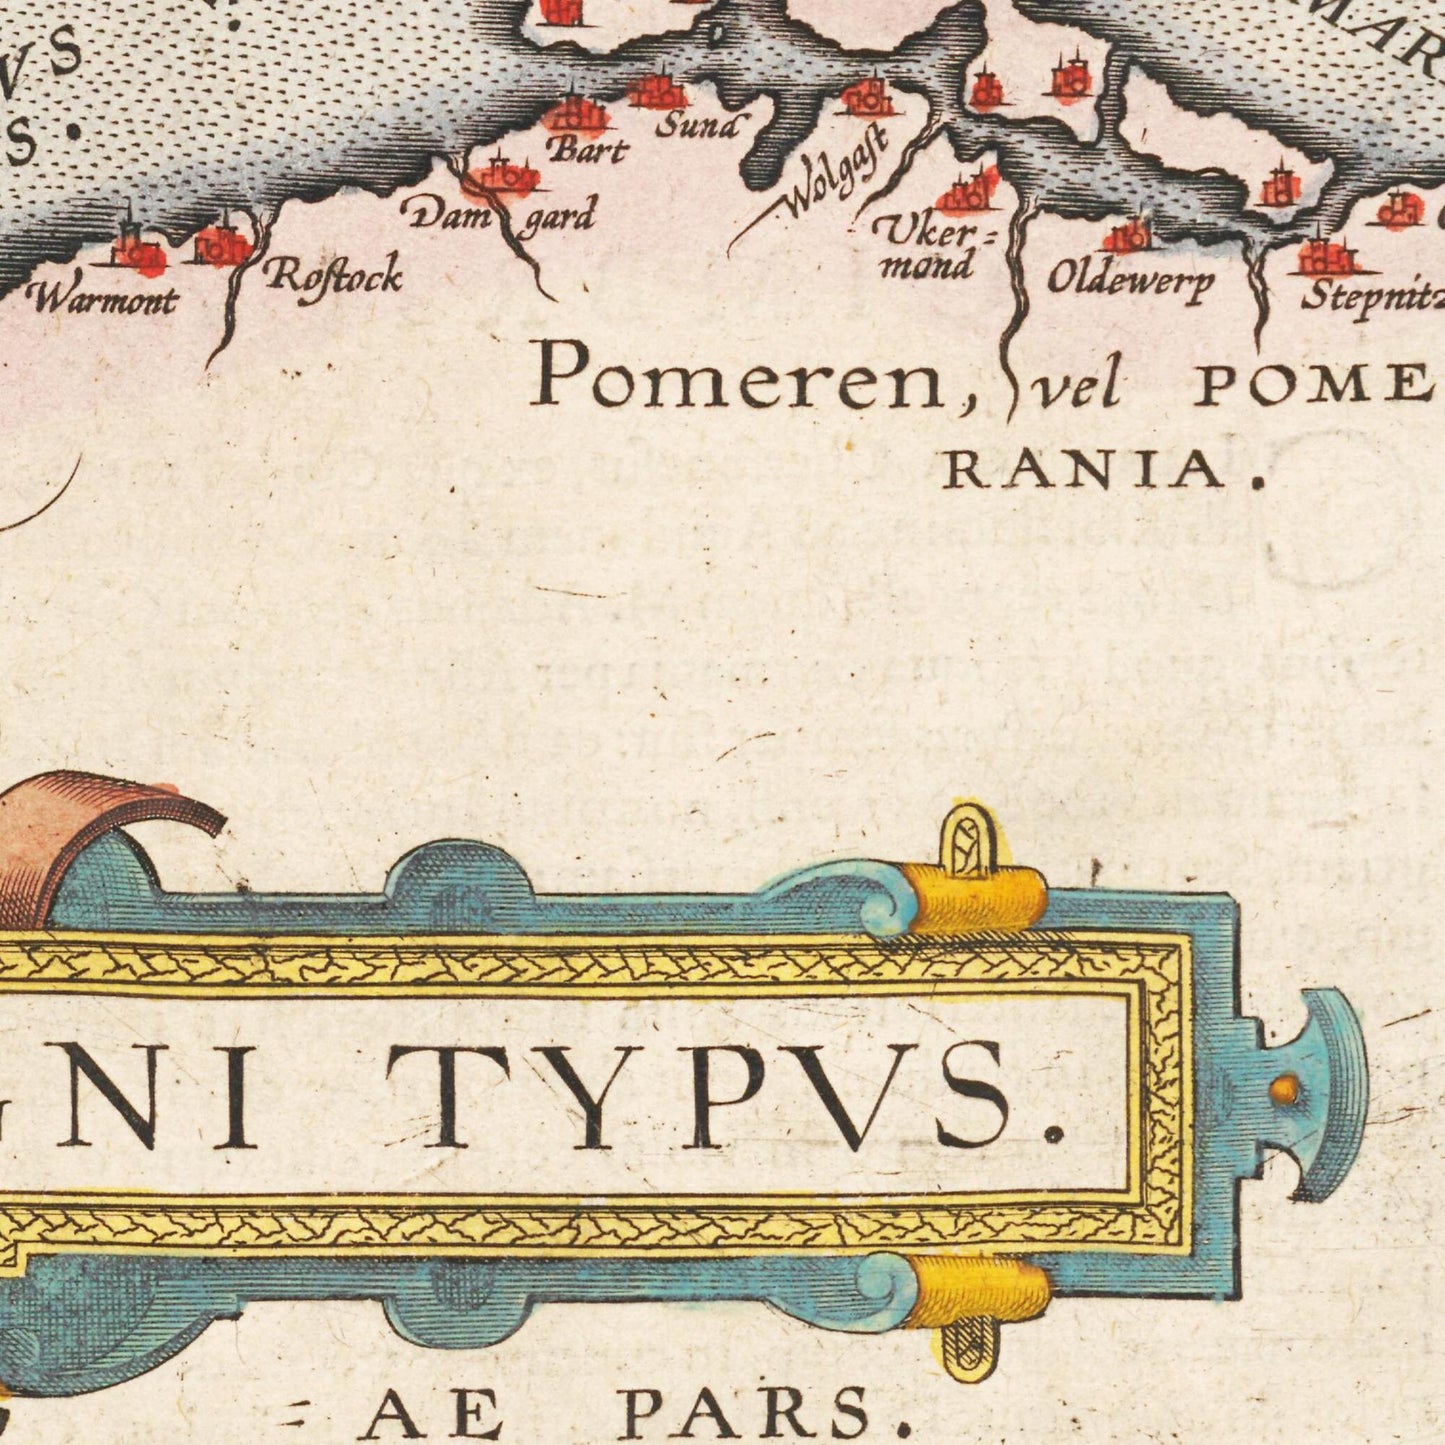 Historische Landkarte Dänemark um 1609